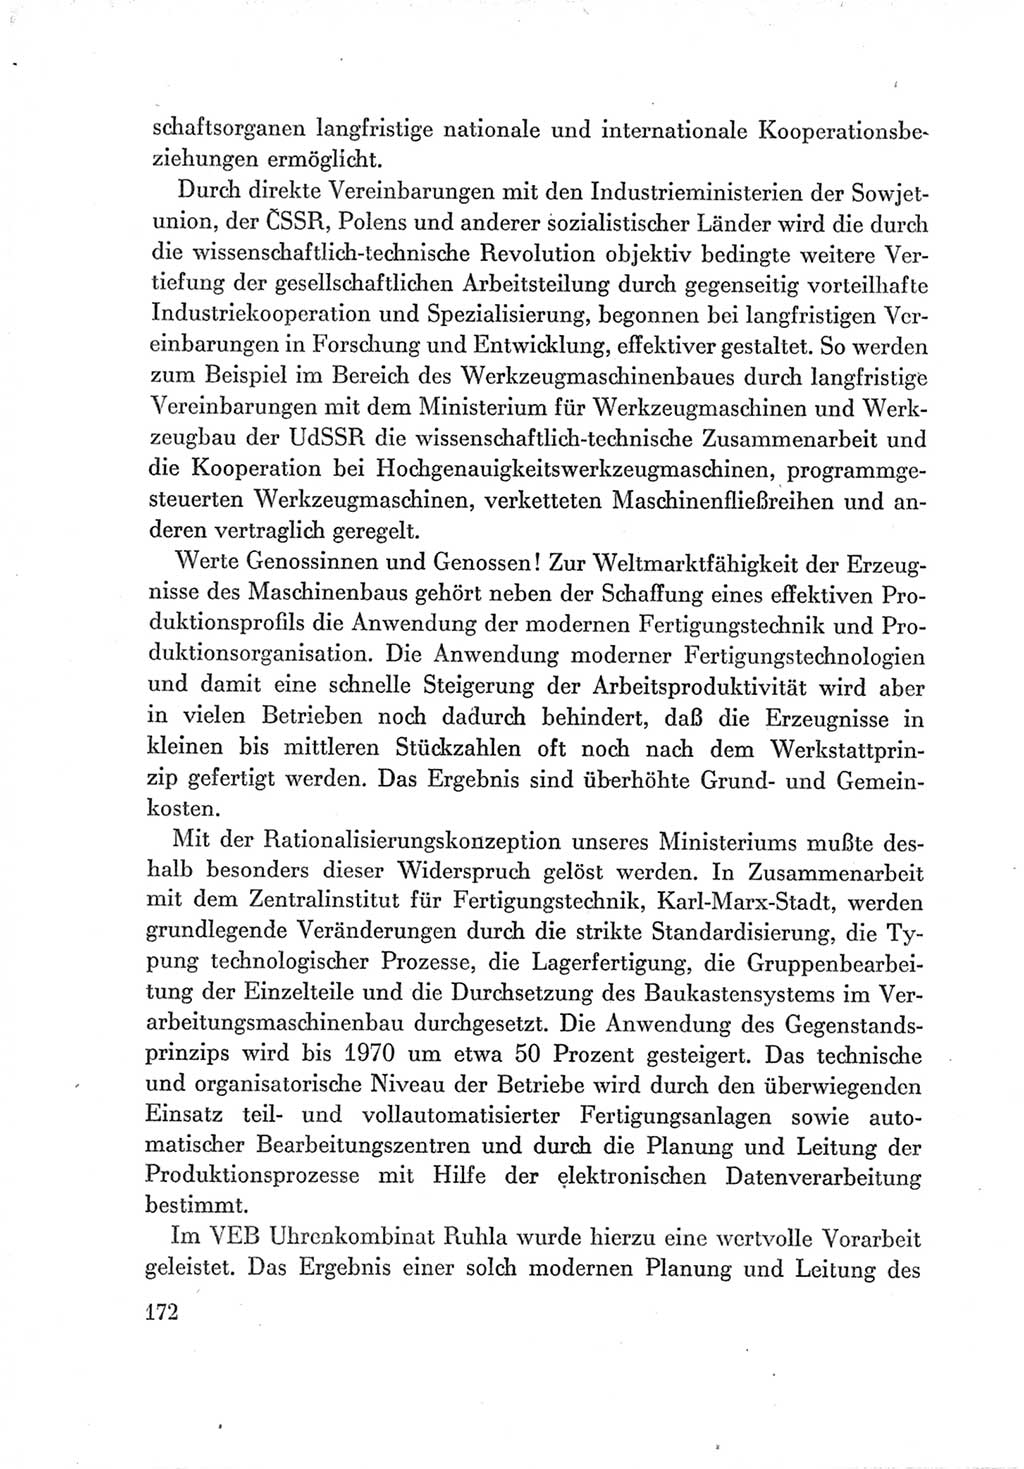 Protokoll der Verhandlungen des Ⅶ. Parteitages der Sozialistischen Einheitspartei Deutschlands (SED) [Deutsche Demokratische Republik (DDR)] 1967, Band Ⅲ, Seite 172 (Prot. Verh. Ⅶ. PT SED DDR 1967, Bd. Ⅲ, S. 172)